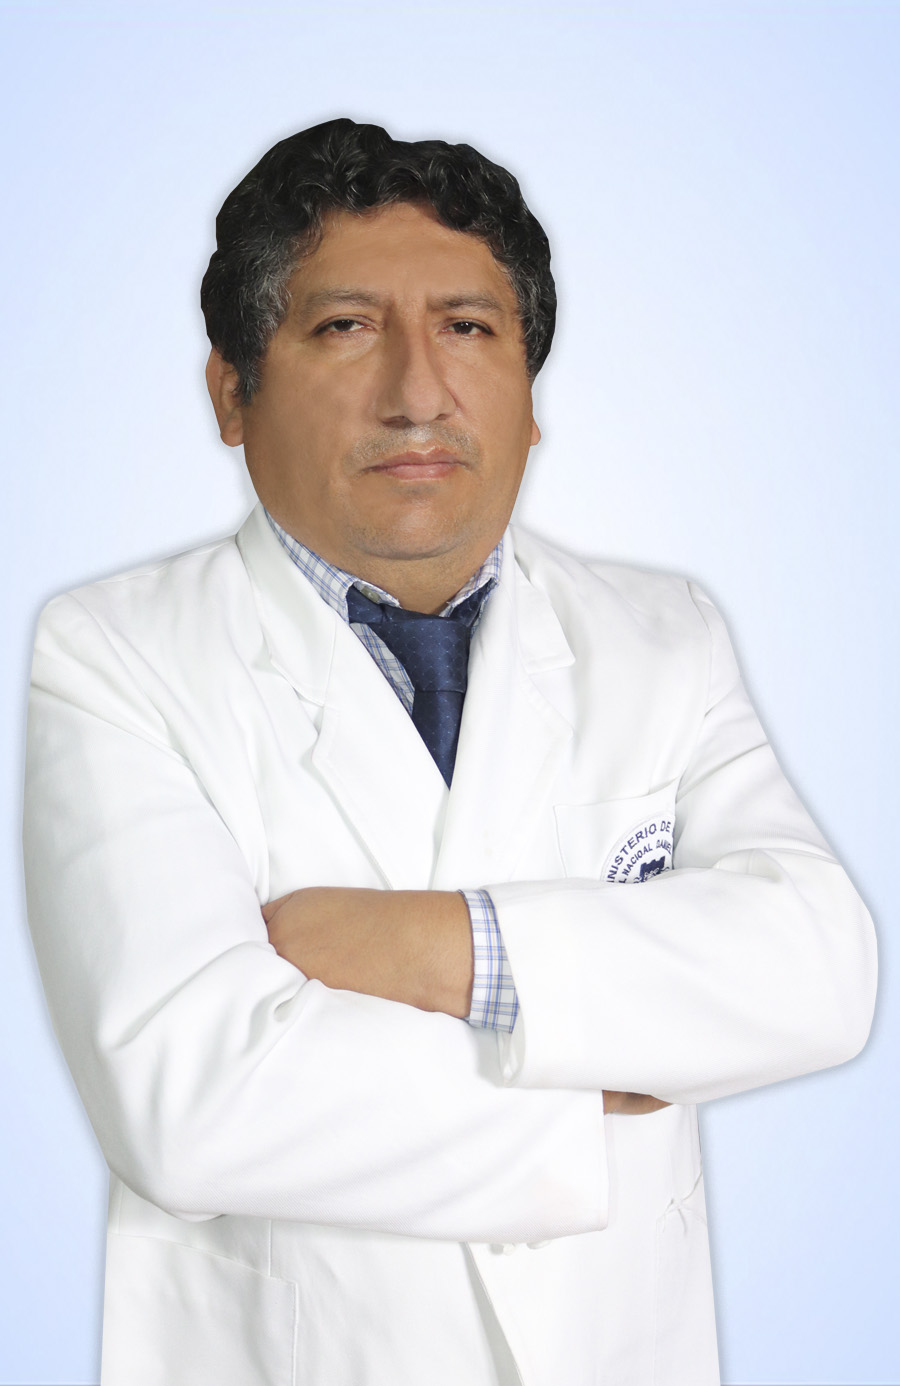 DR. SUYO